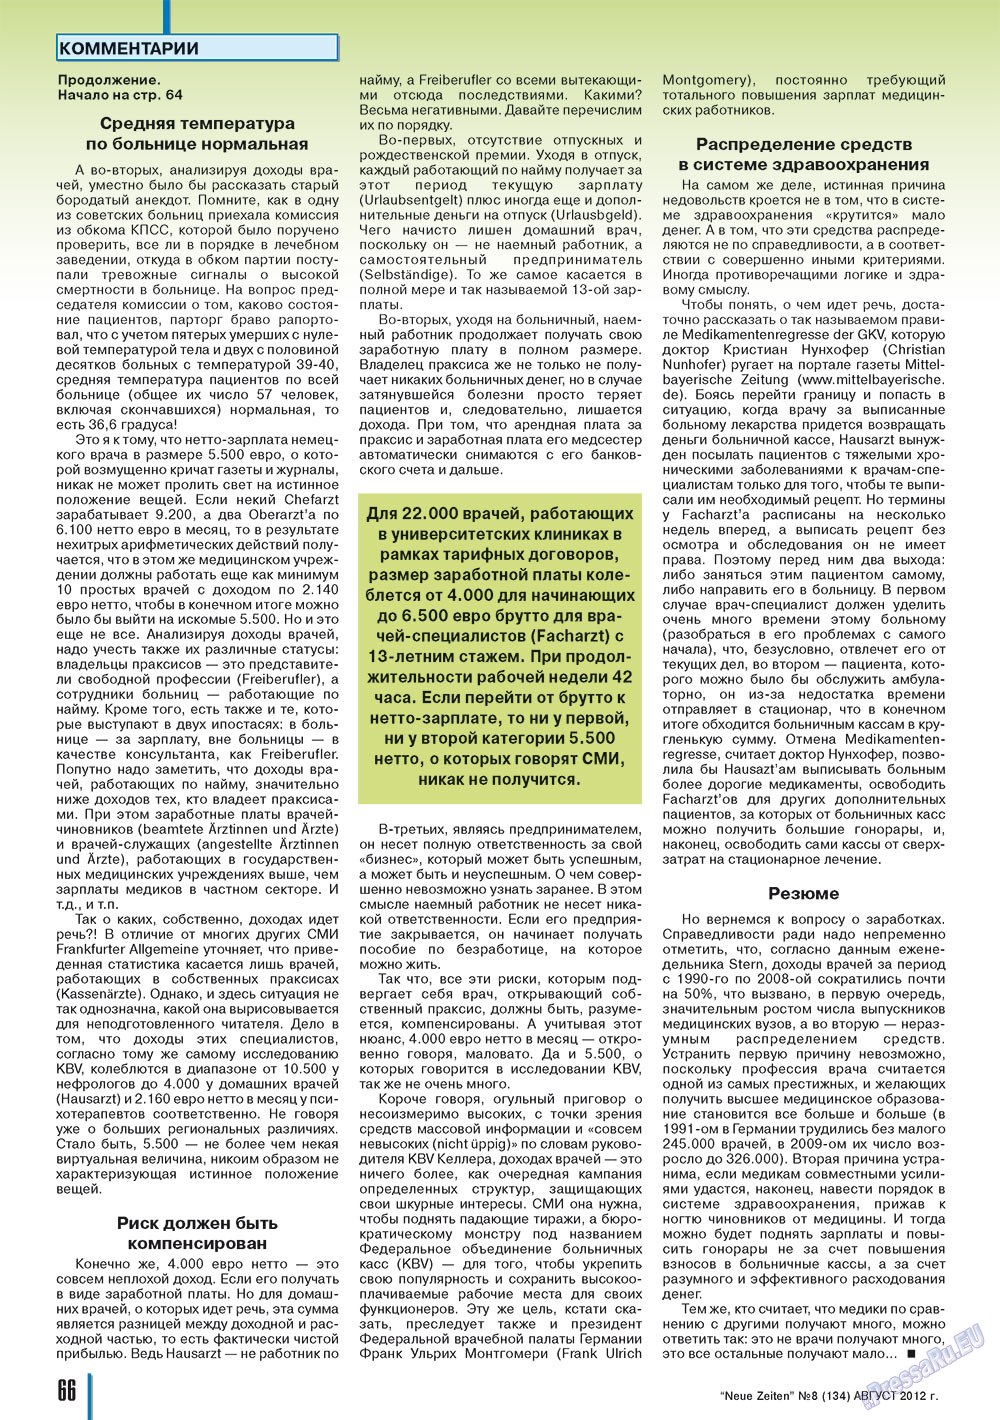 Neue Zeiten, журнал. 2012 №8 стр.66